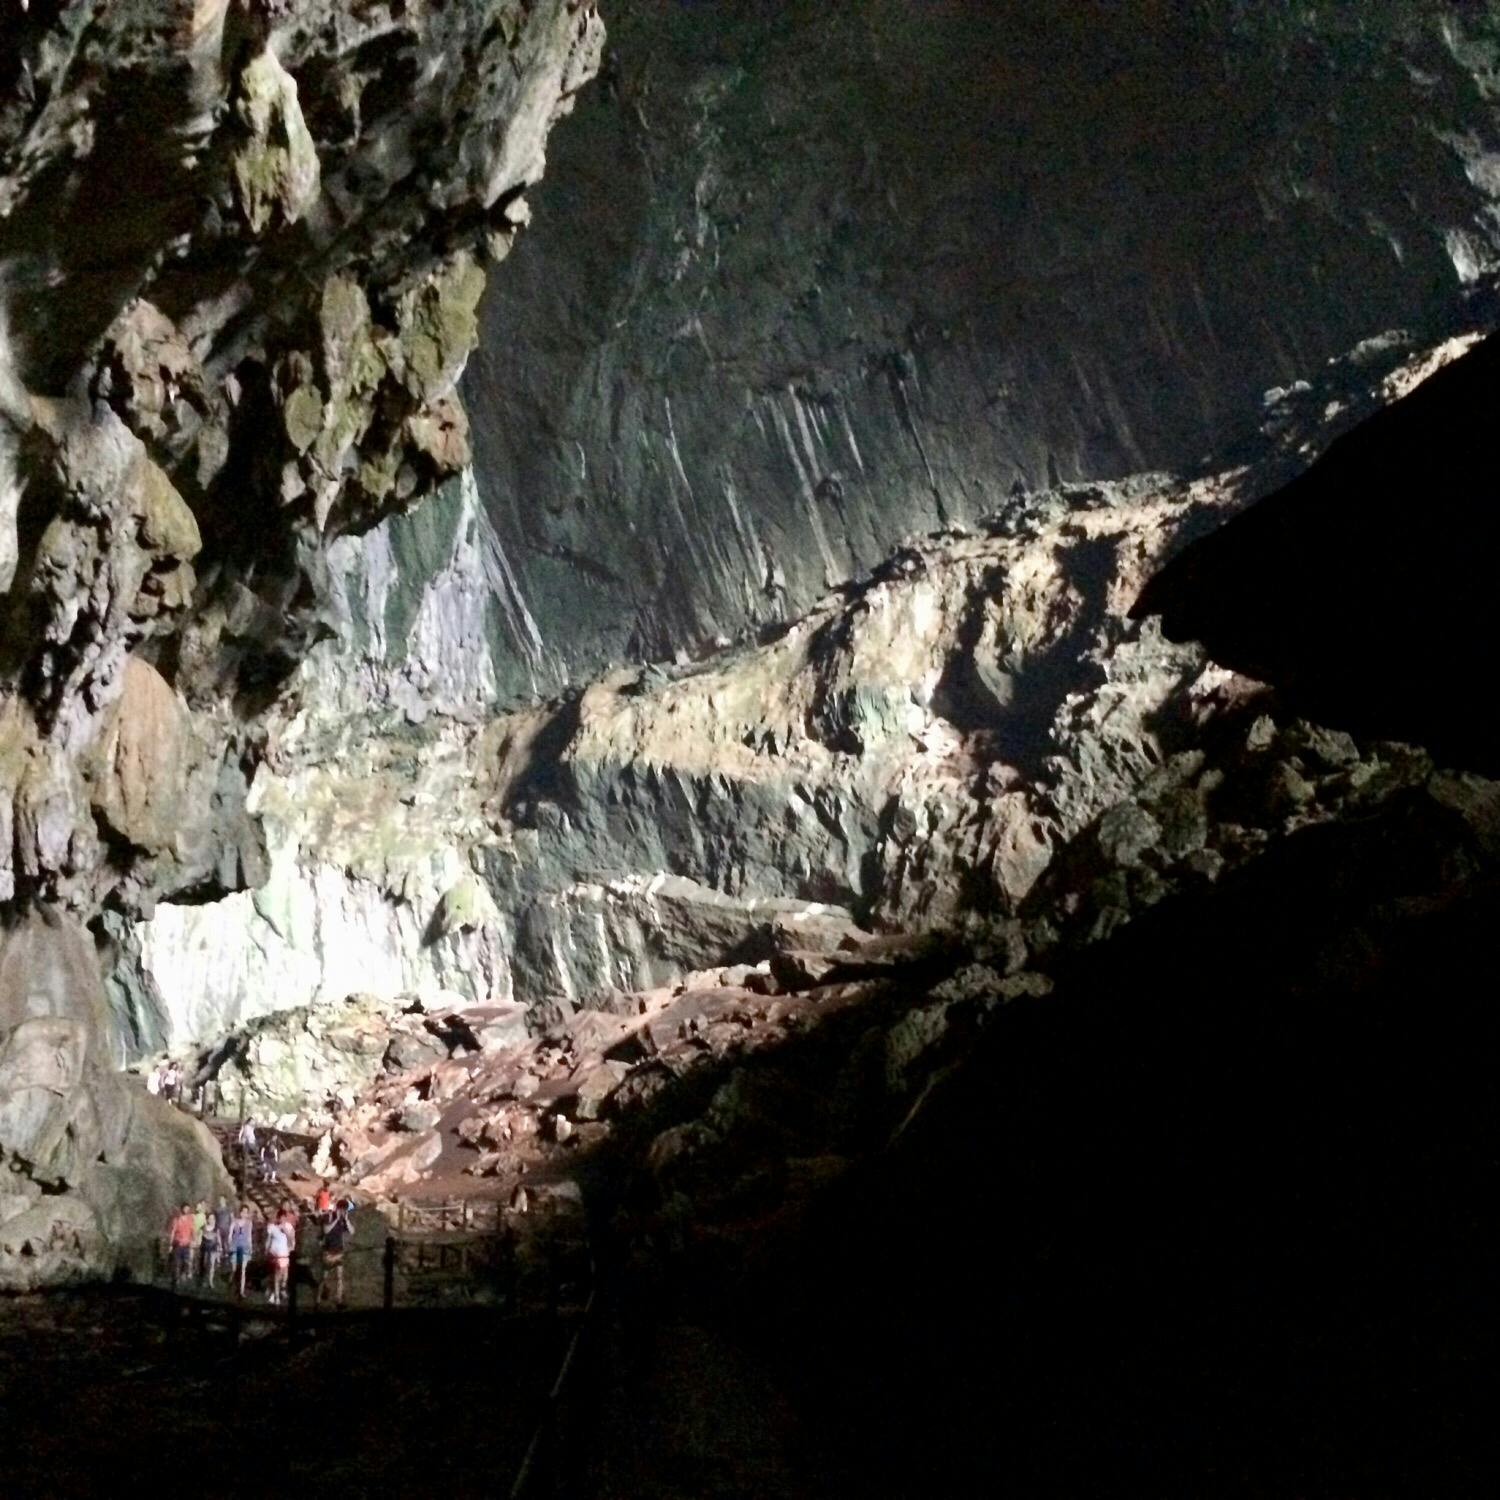 グヌン ムル国立公園 Gunung Mulu National Park の投稿写真 感想 みどころ マレーシア ボルネオ島のグヌン ムル国立公園内の巨大洞窟 トリップノート